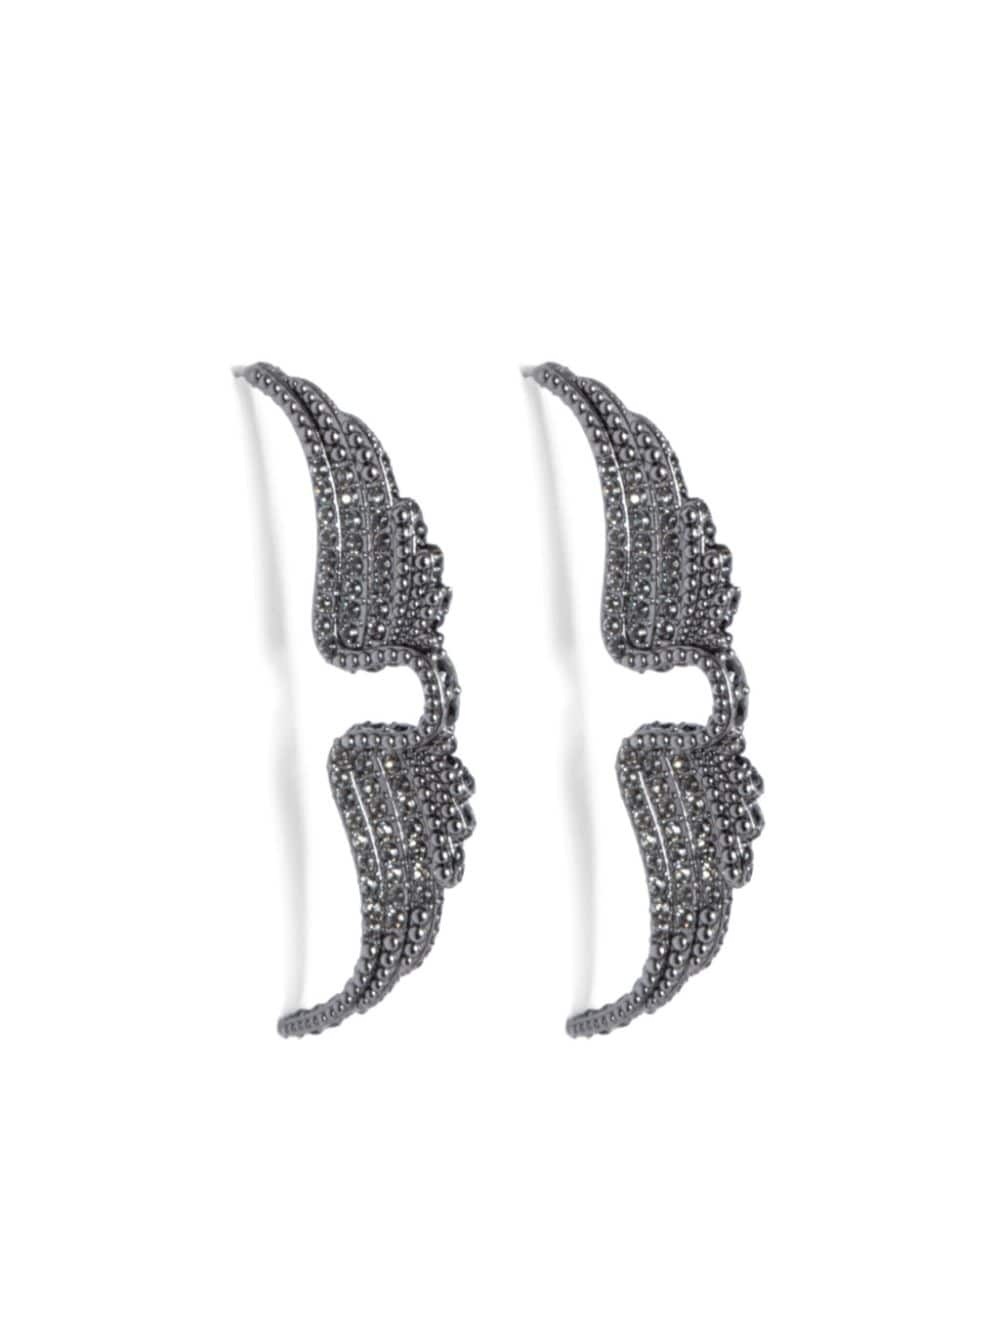 Rock piercing earrings - 1